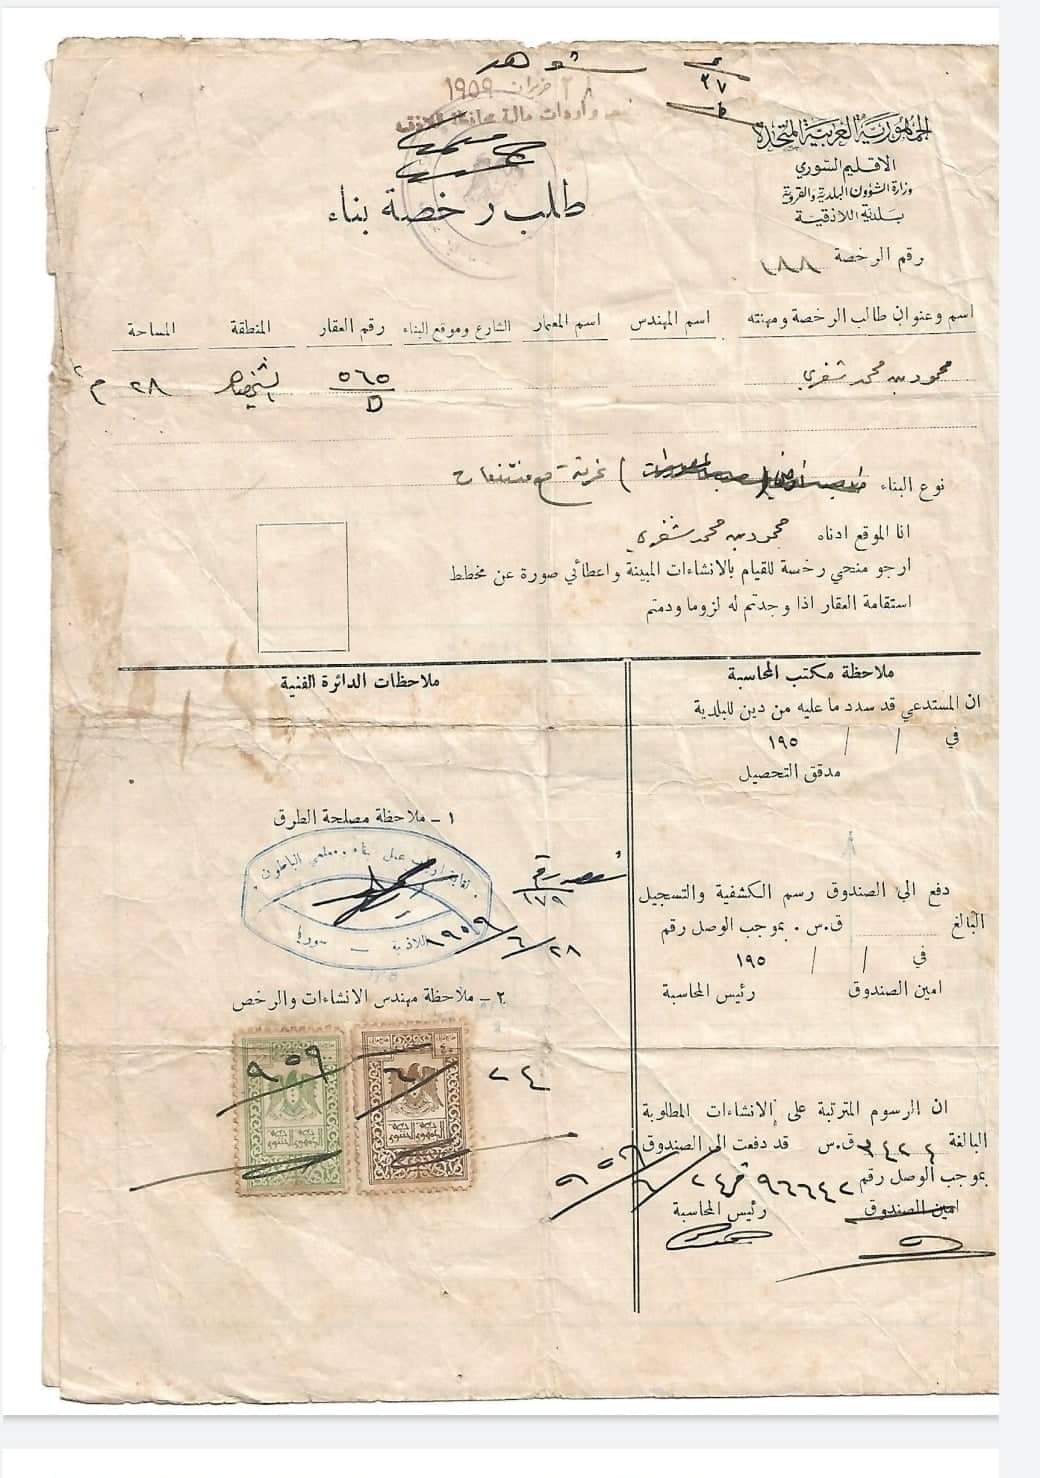 التاريخ السوري المعاصر - رخصة بناء عقار في منطقة الشيخضاهر في اللاذقية عام 1959م